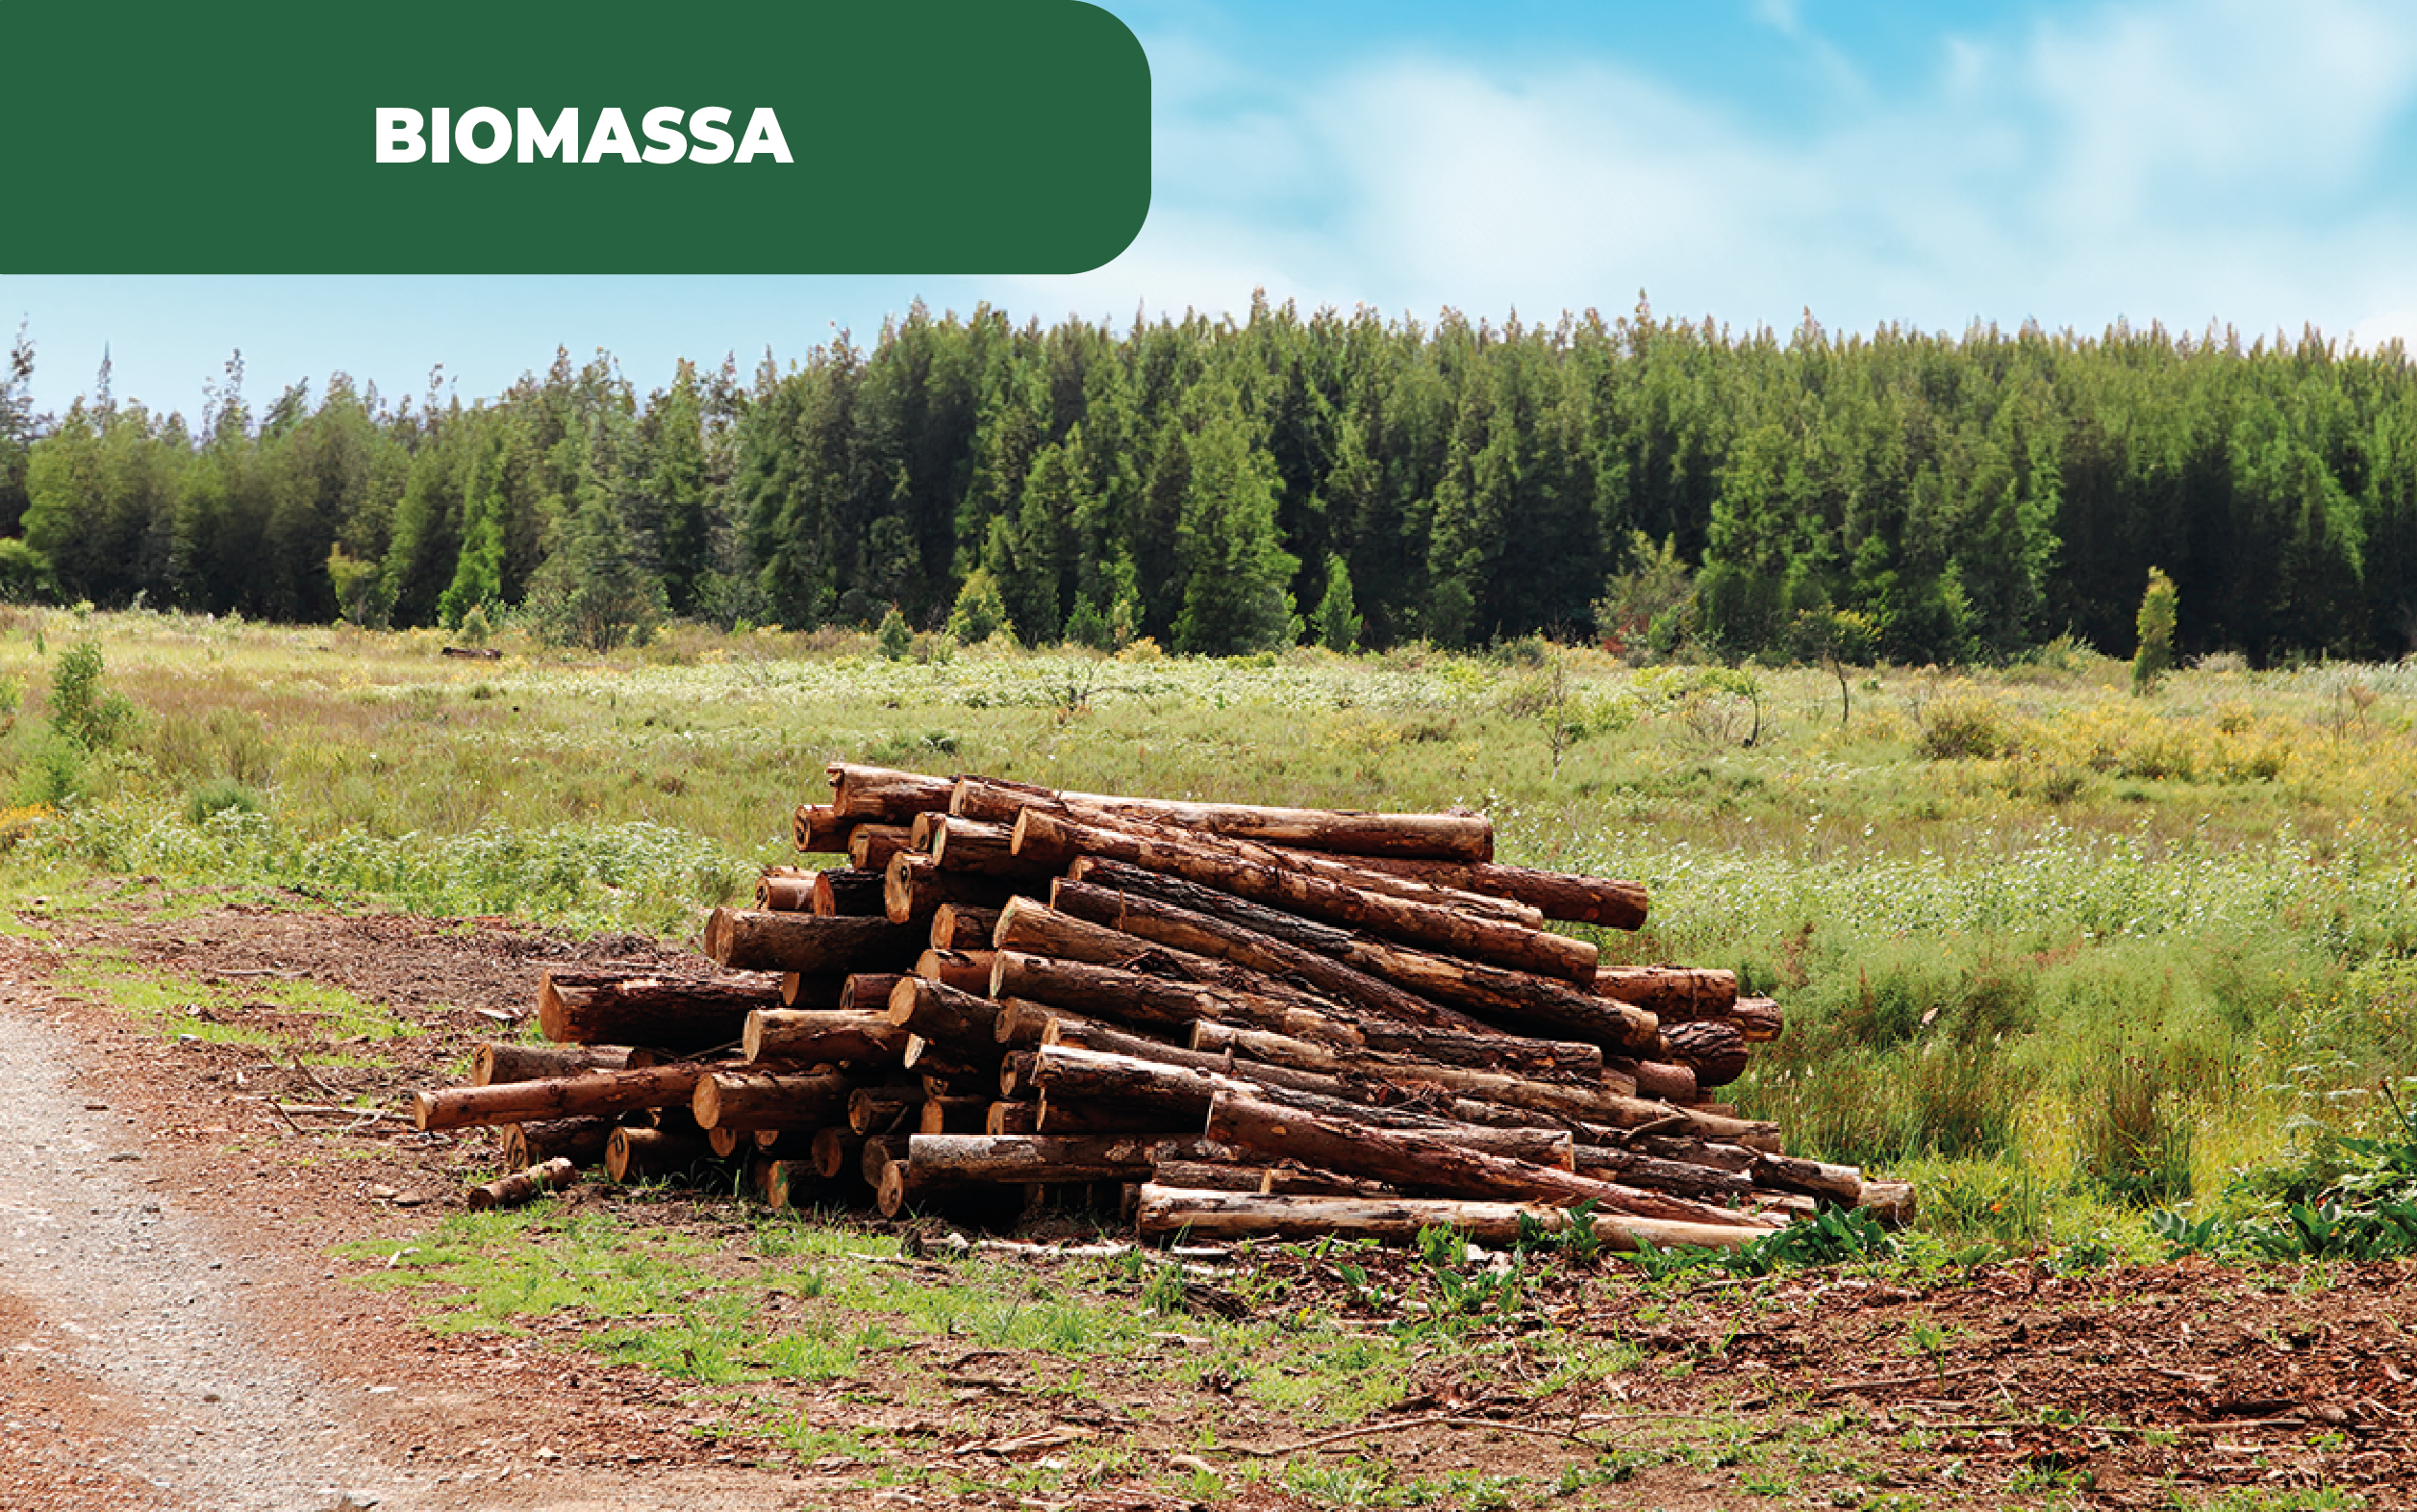 Imagem colorida de uma paisagem campestre, com toros de madeira, em foco. Contudo, em Portugal o alerta lançado aponta que a falta de biomassa atrasa o desenvolvimento dos projetos, mesmo com apoios do Governo.